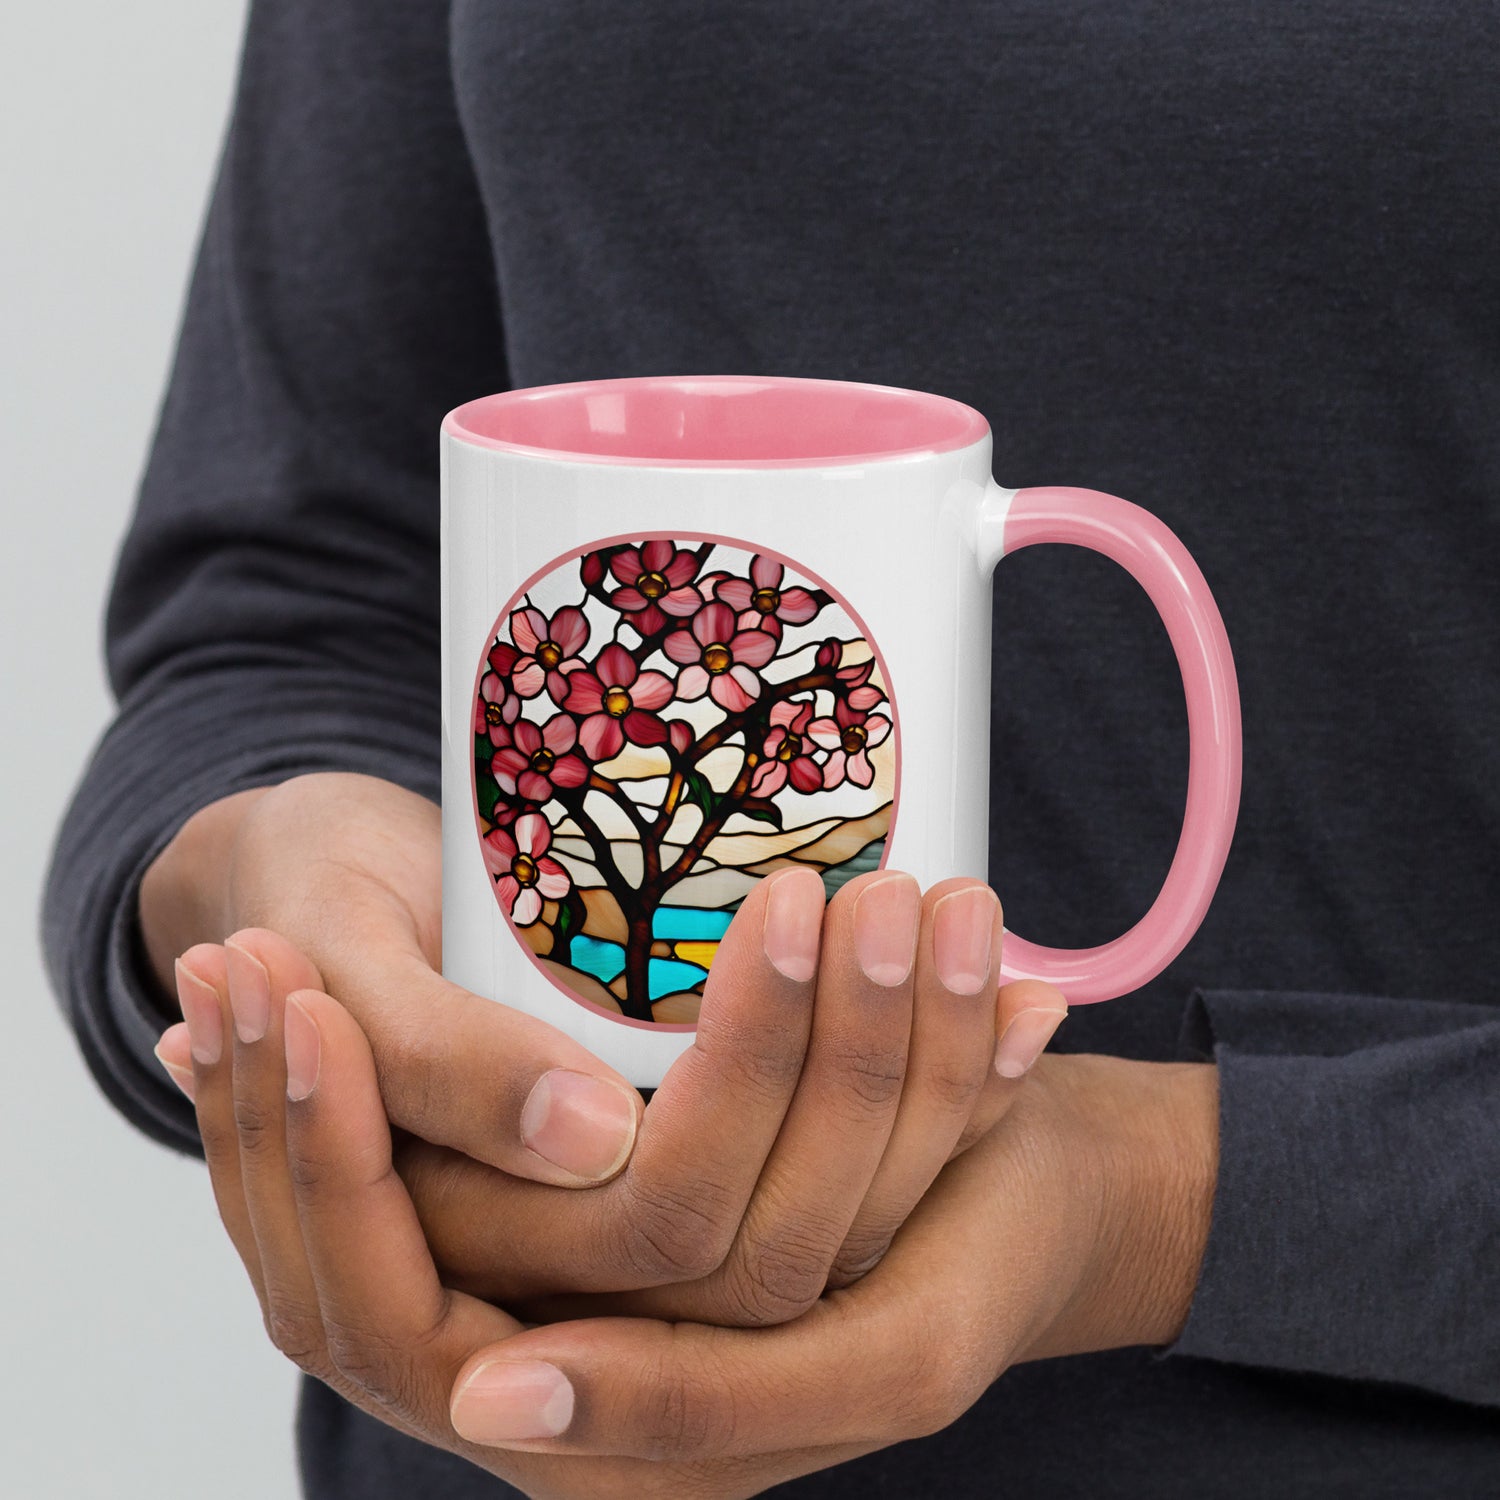 Vista de la taza en las manos